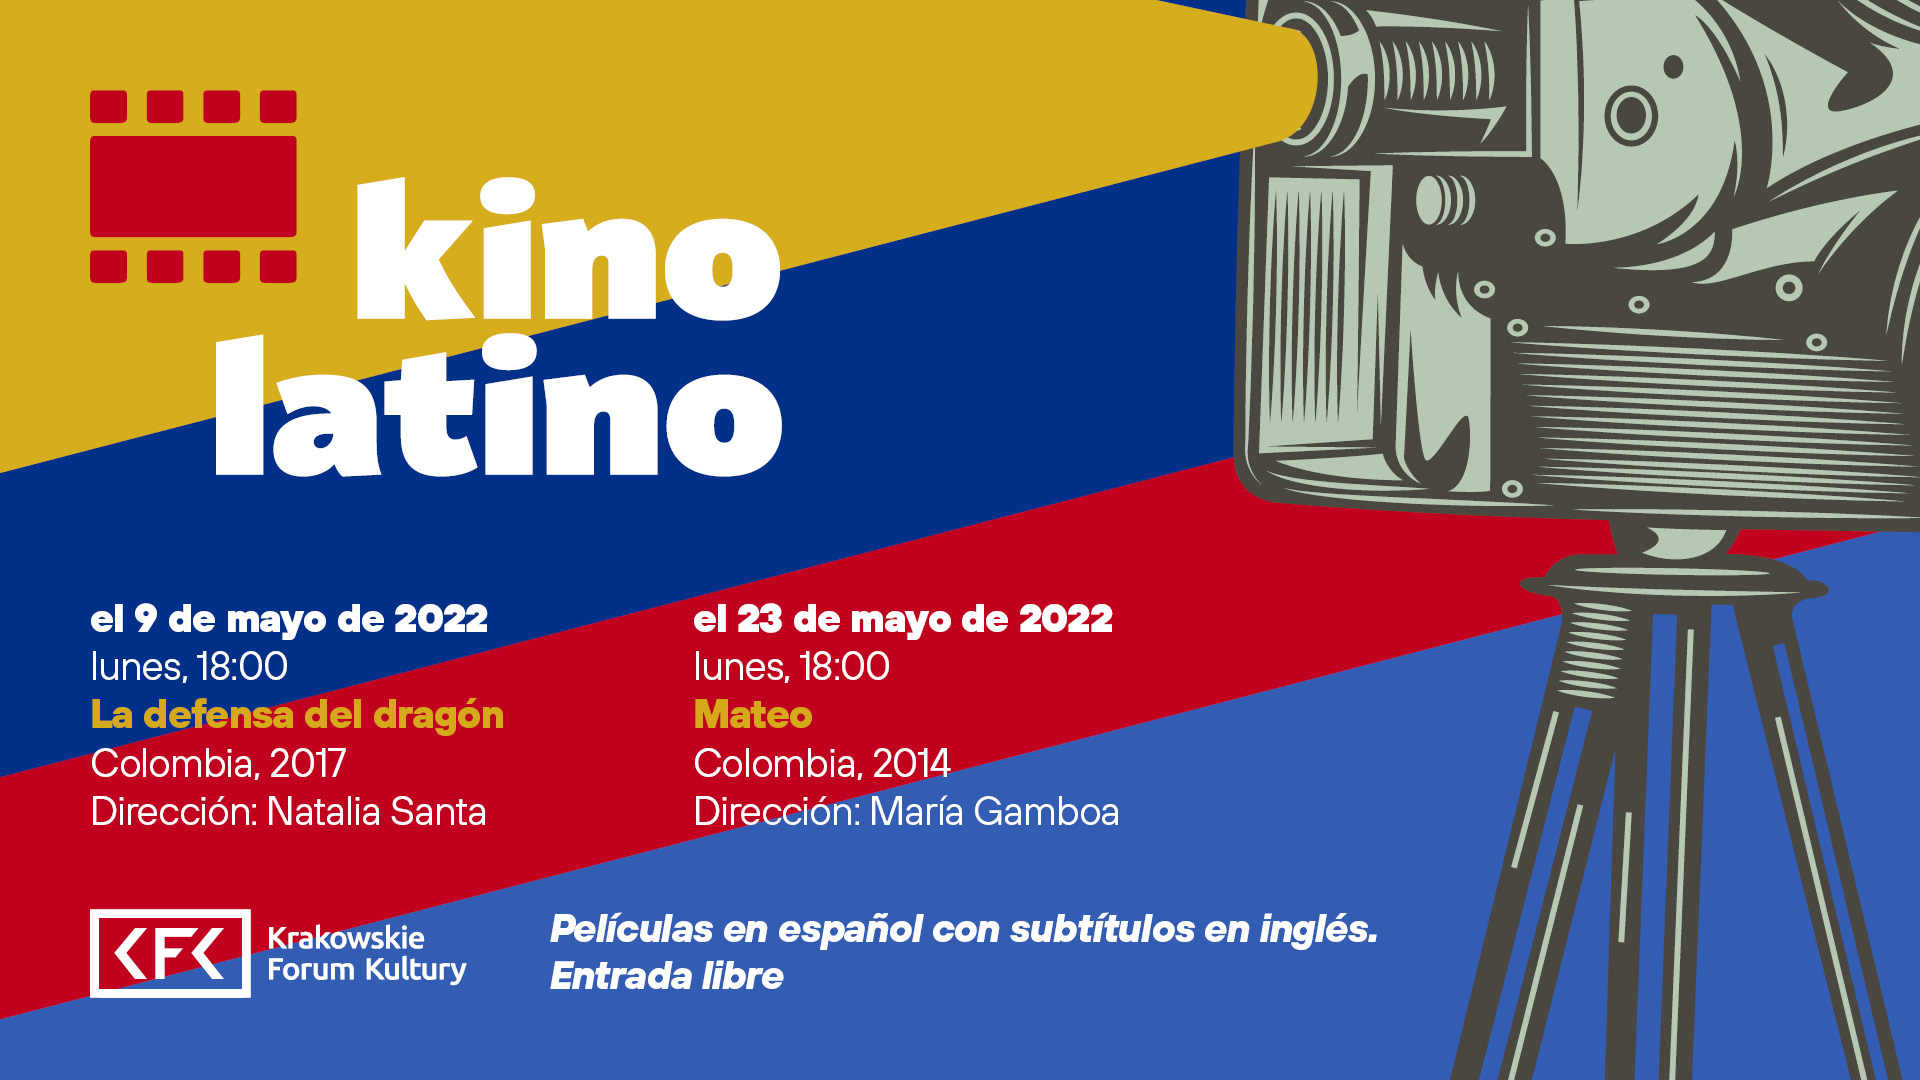 kino kfk2022 kino latino wm 6 5 - Kino Latino